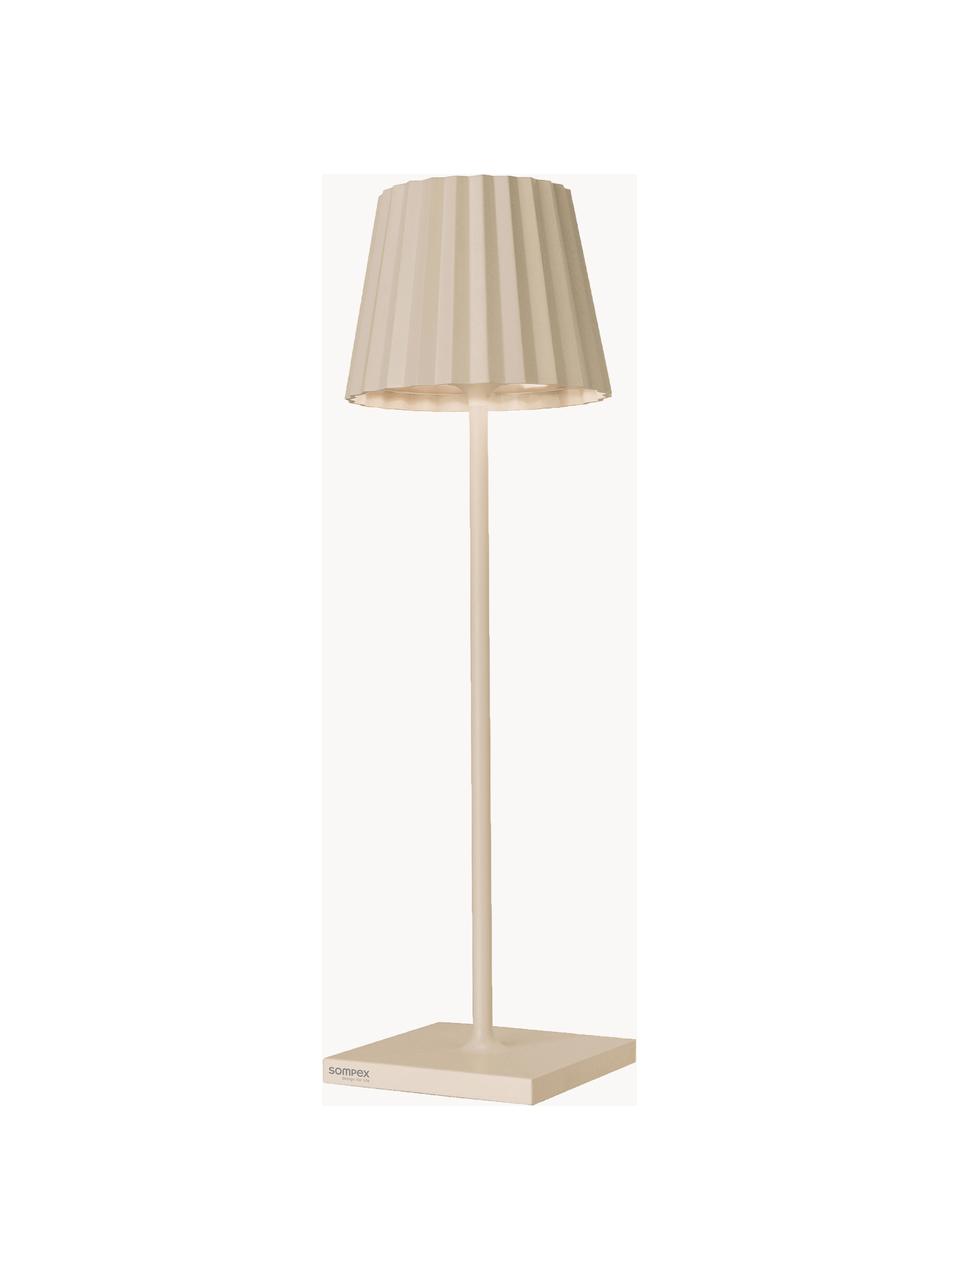 Mobiele dimbare LED outdoor tafellamp Trellia, Lamp: gecoat aluminium, Lichtbeige, Ø 11 x H 38 cm